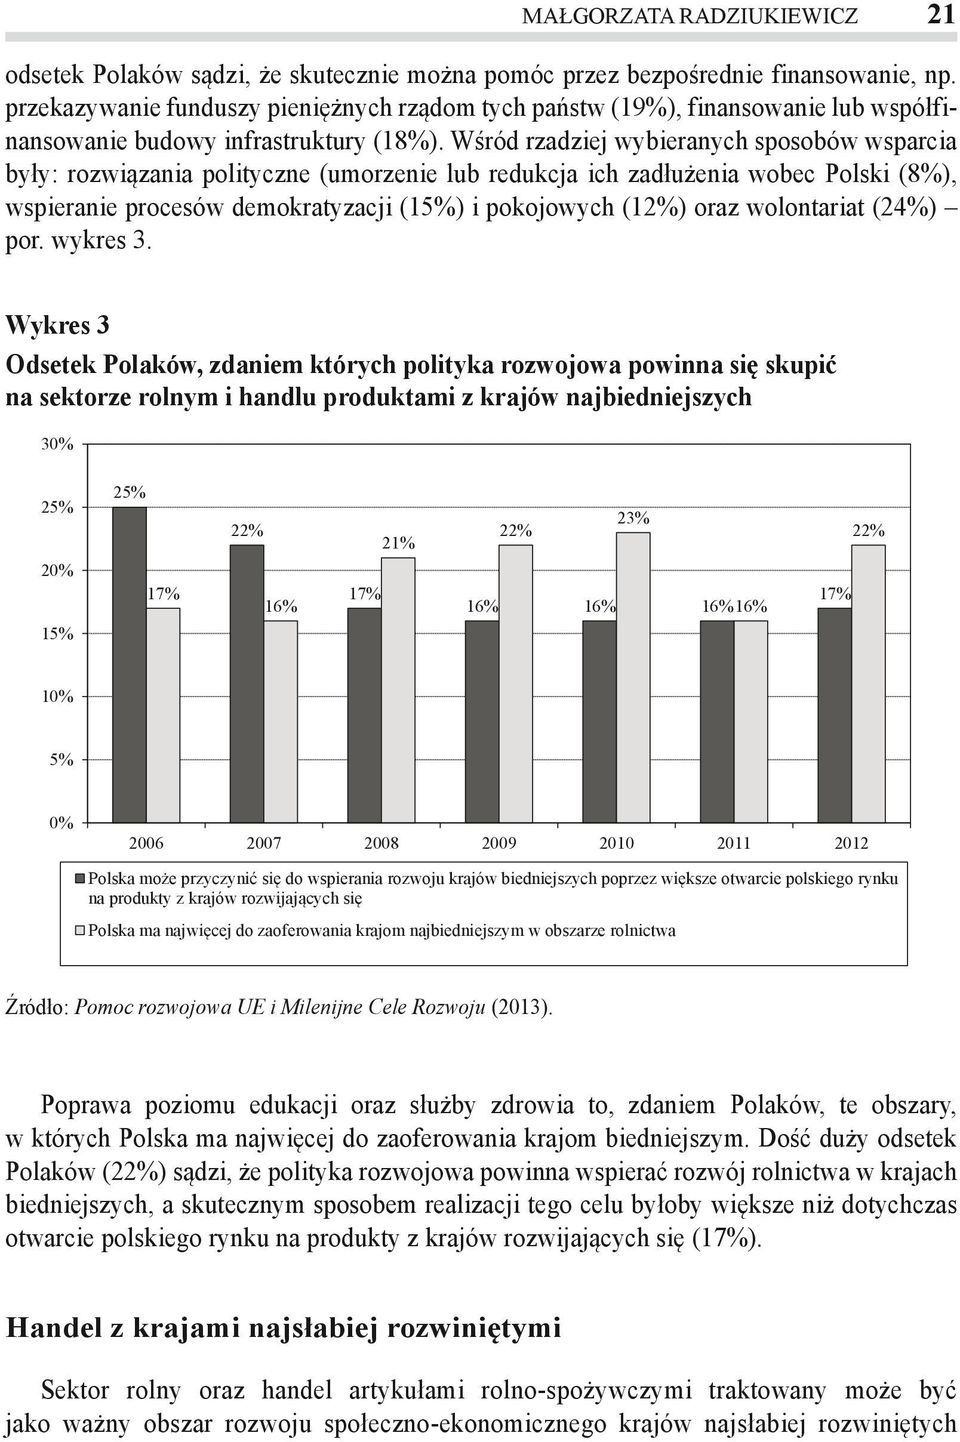 Wśród rzadziej wybieranych sposobów wsparcia były: rozwiązania polityczne (umorzenie lub redukcja ich zadłużenia wobec Polski (8%), wspieranie procesów demokratyzacji (15%) i pokojowych (12%) oraz